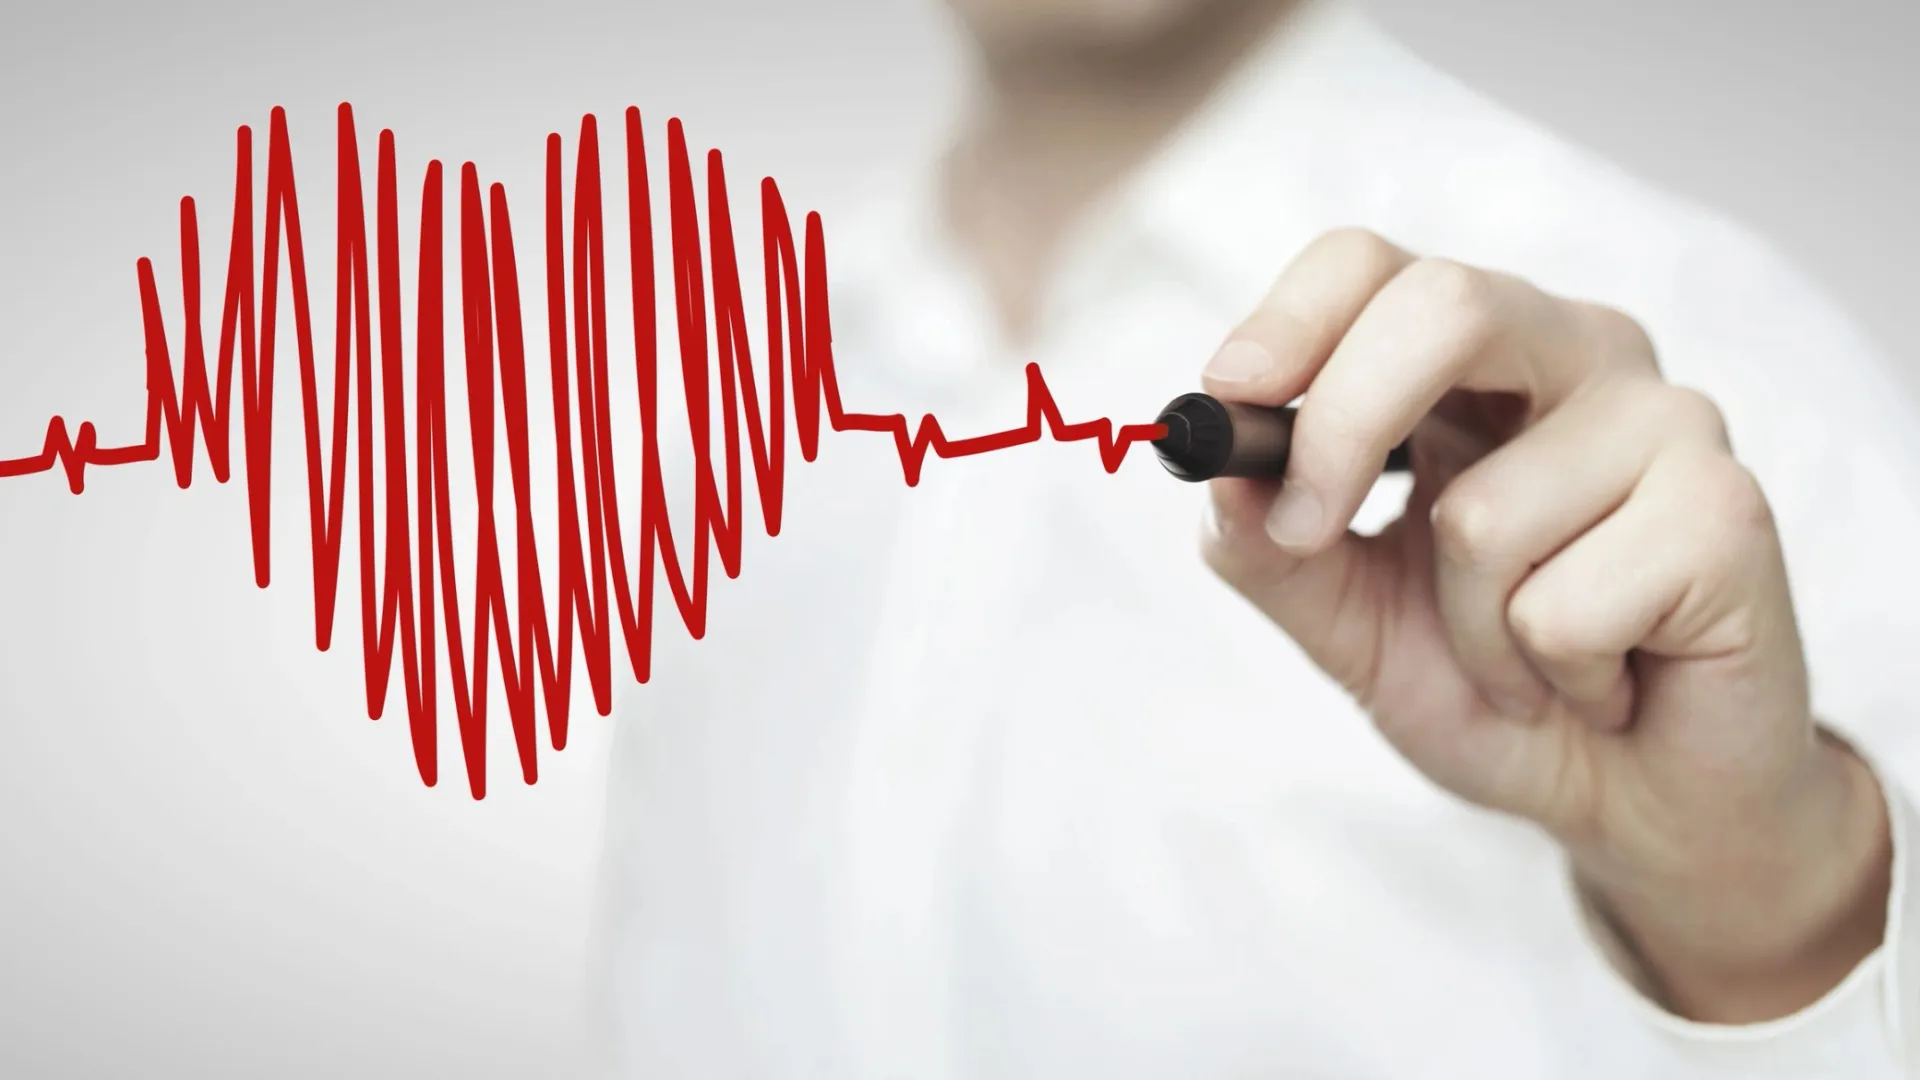 Больше всего жизней уносят болезни сердца. Фото: Peshkova/Shutterstock/Fotodom